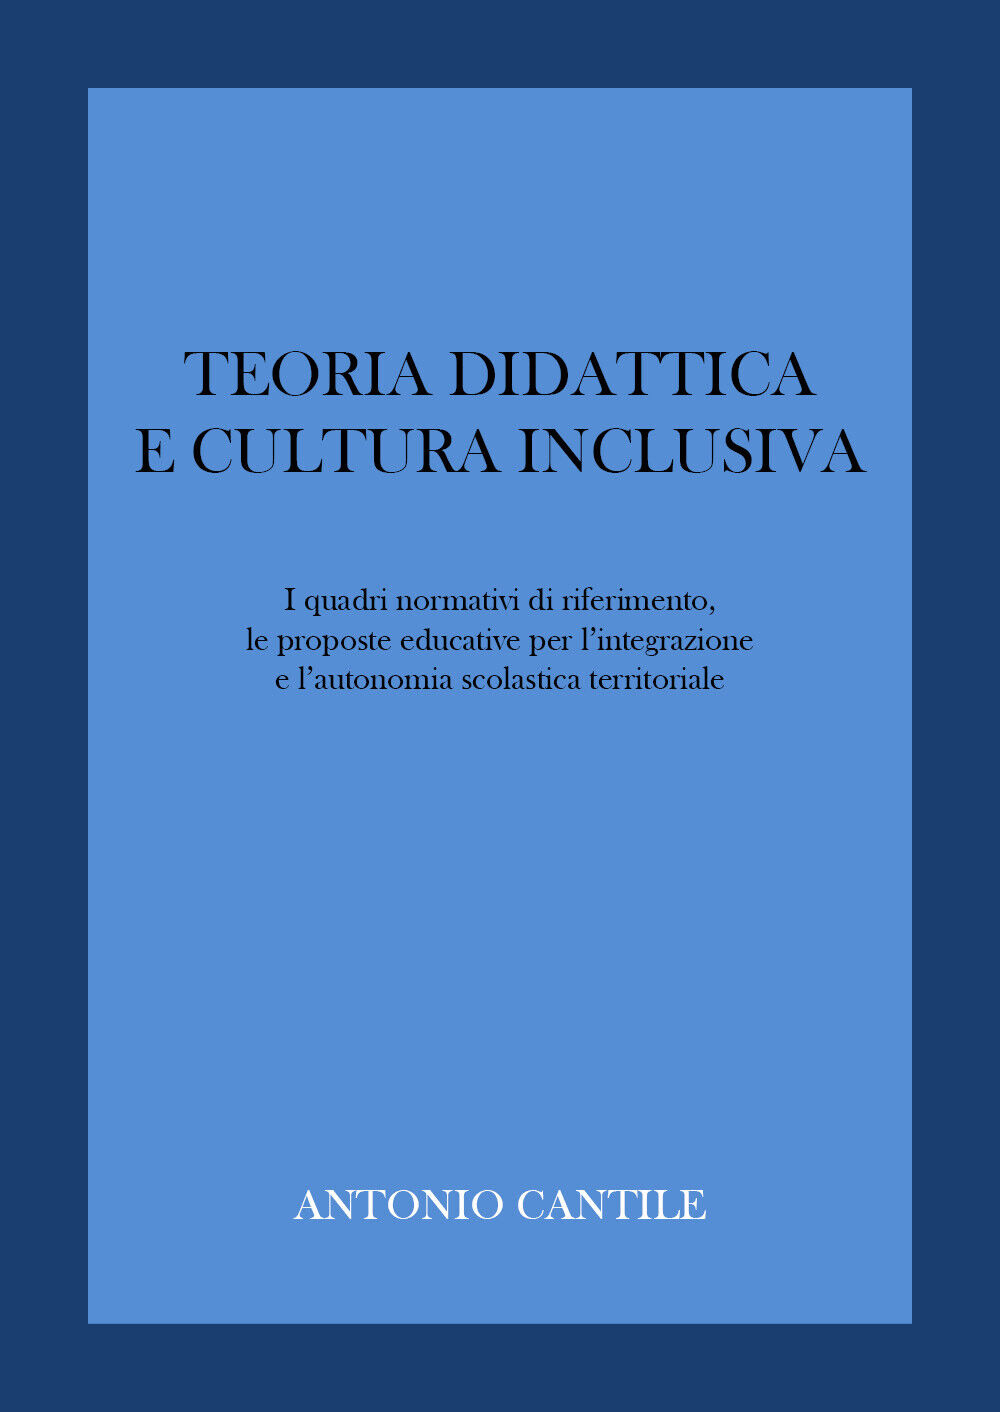 Teoria didattica e cultura inclusiva di Antonio Cantile,  2022,  Youcanprint libro usato